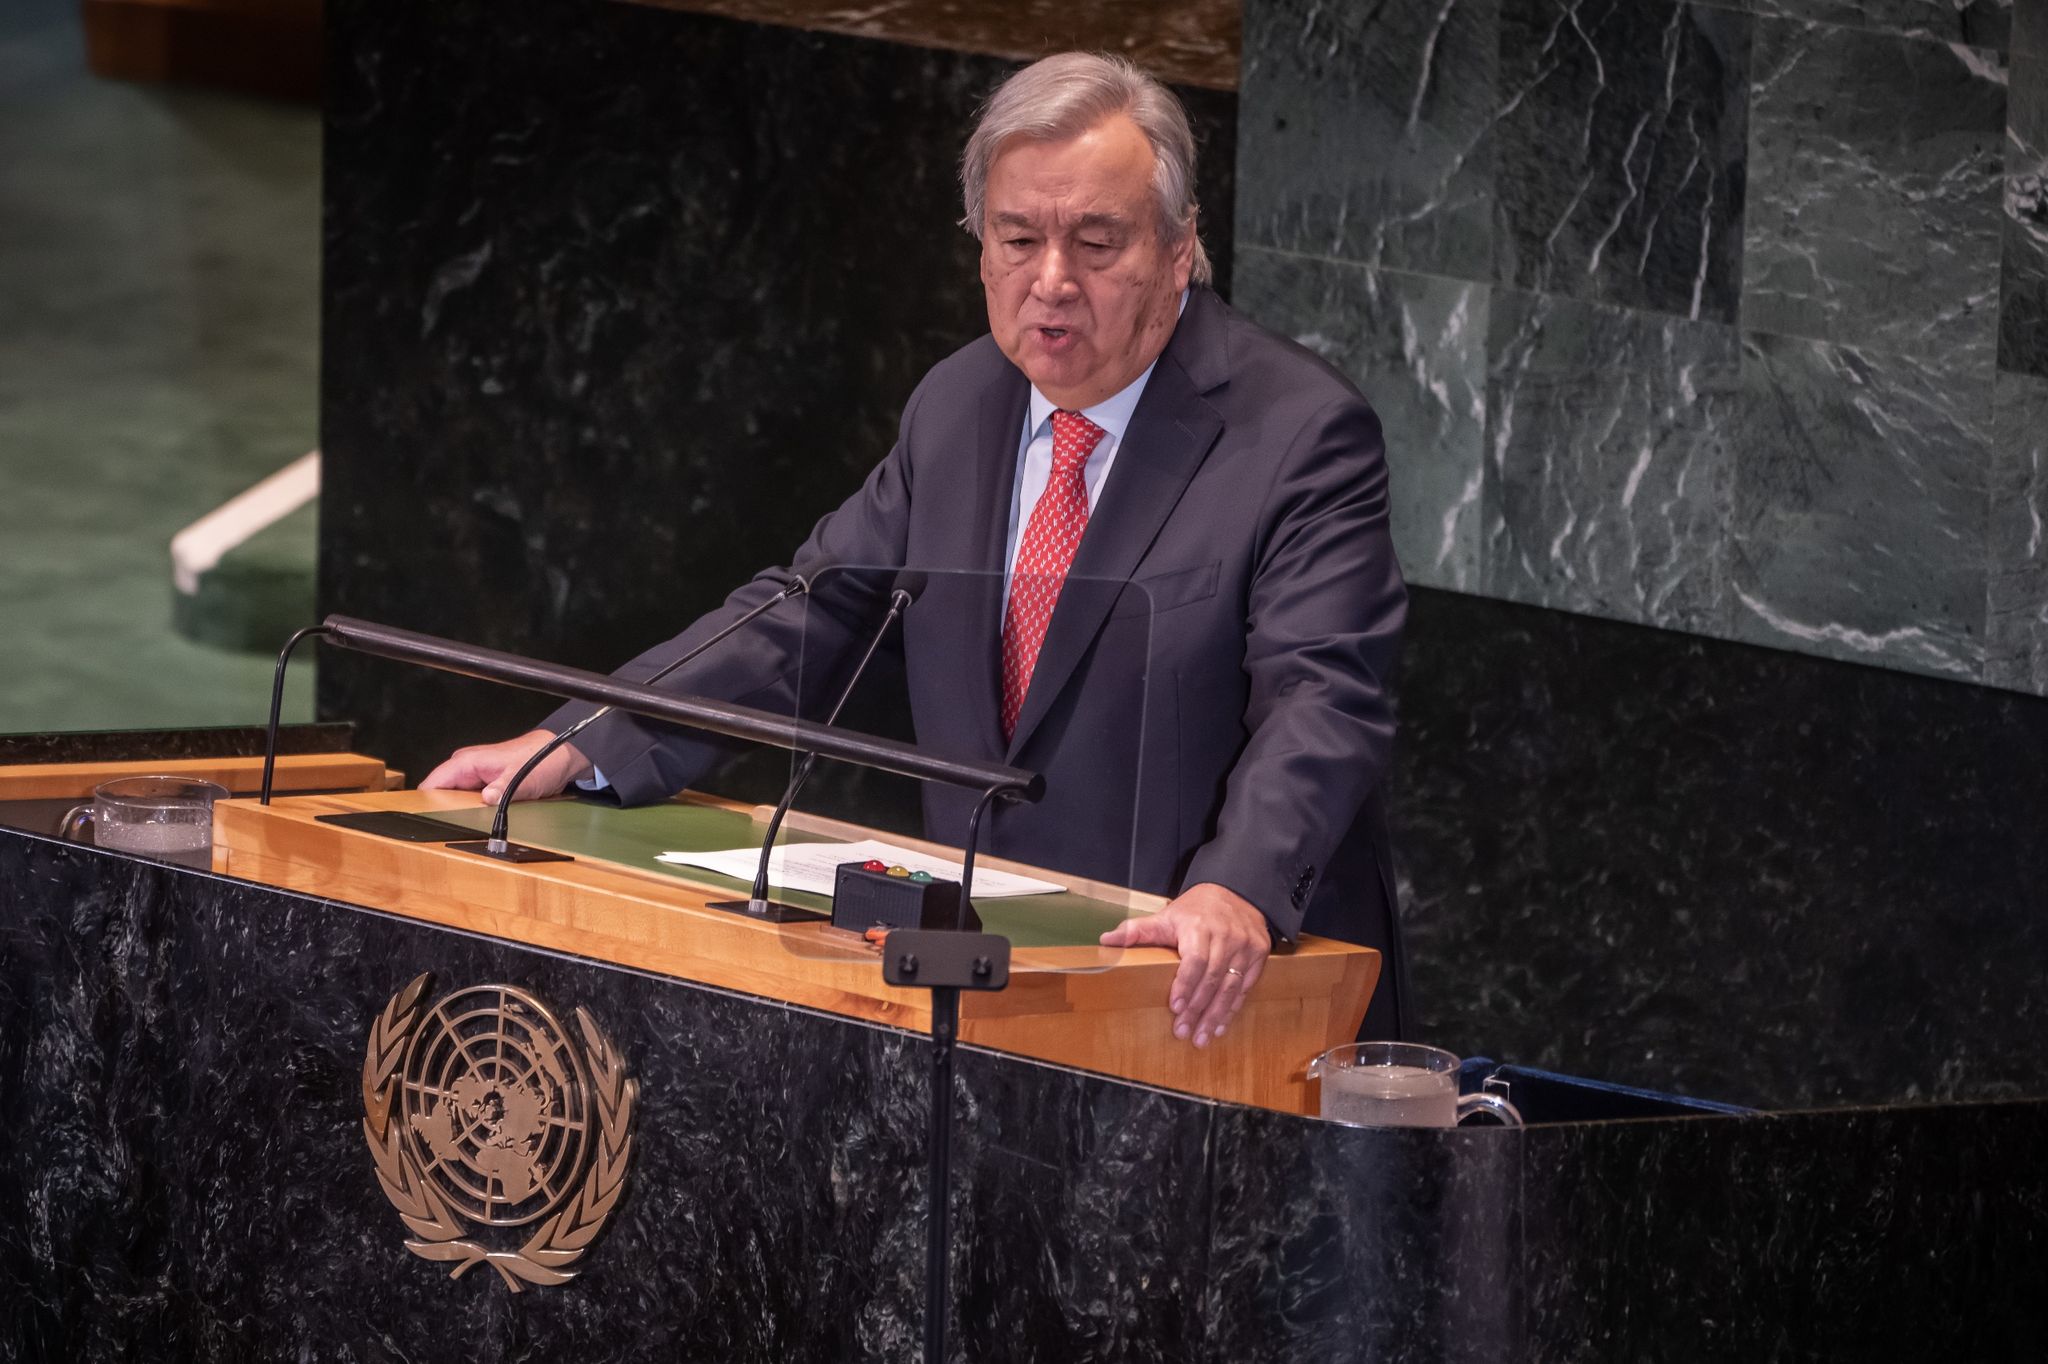 António Guterres spricht bei der Konferenz über Stand der Nachhaltigkeitsziele der Vereinten Nationen.